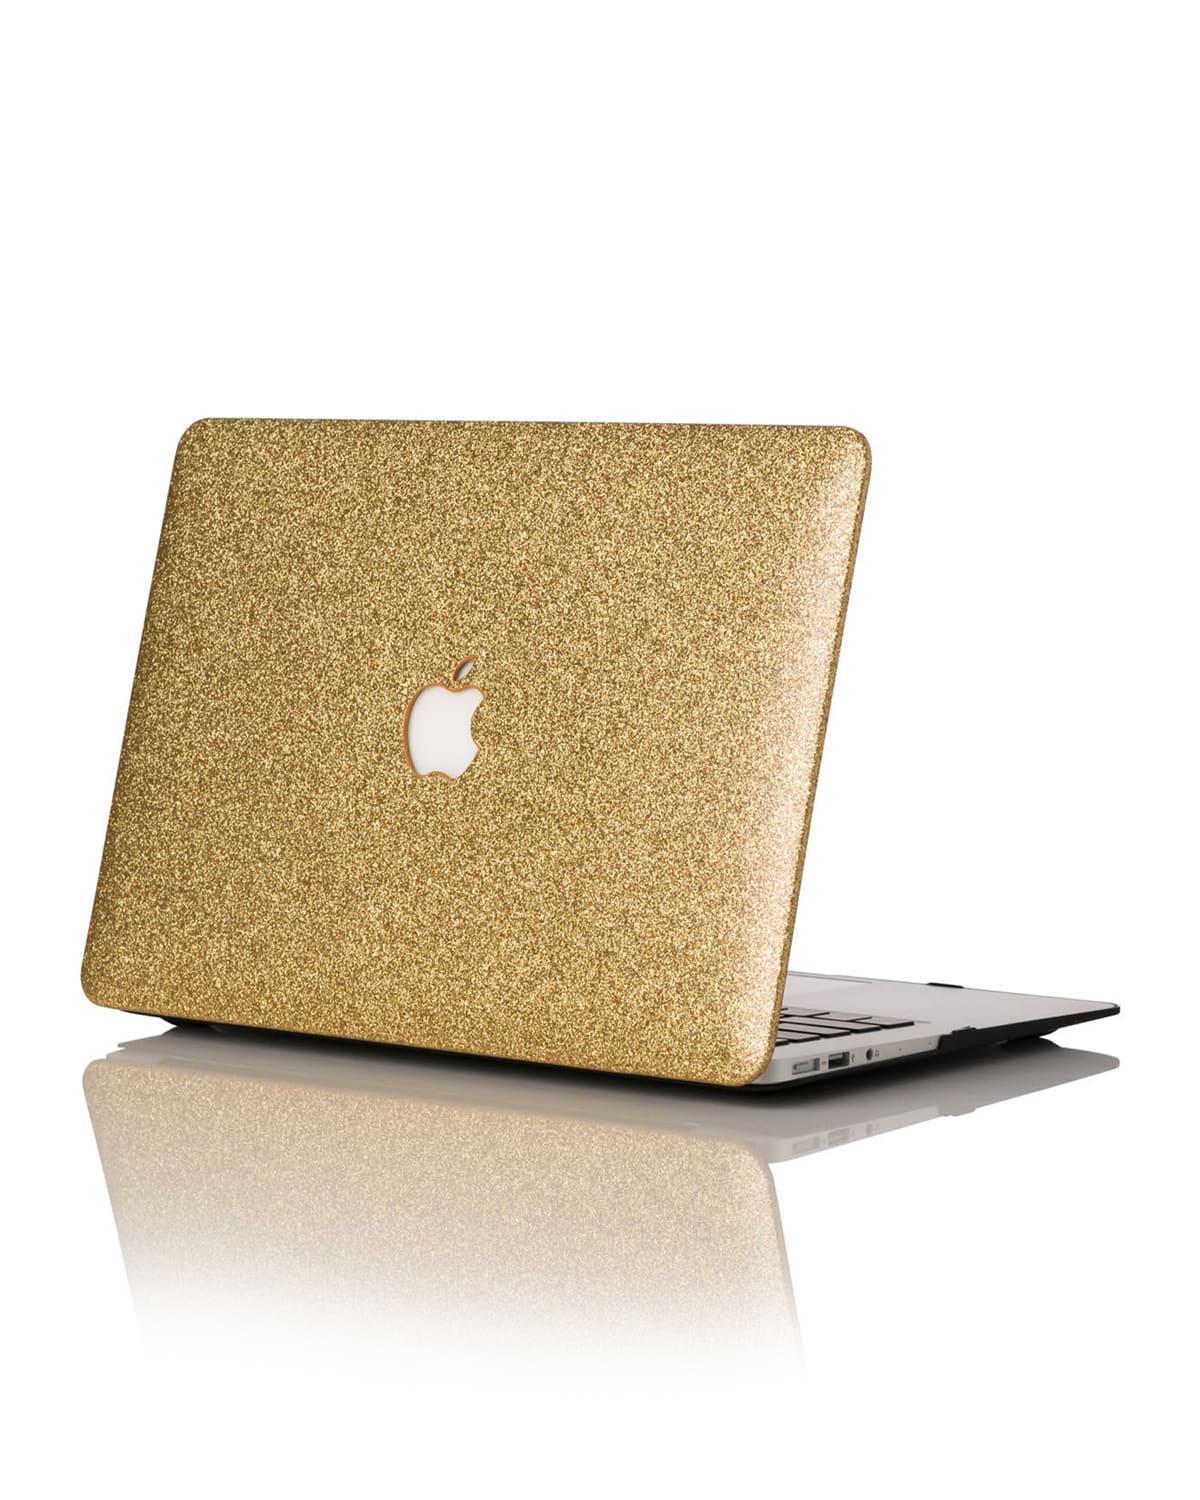 Glitter 13" MacBook Air Case (Model numbers A1466 & A1369)